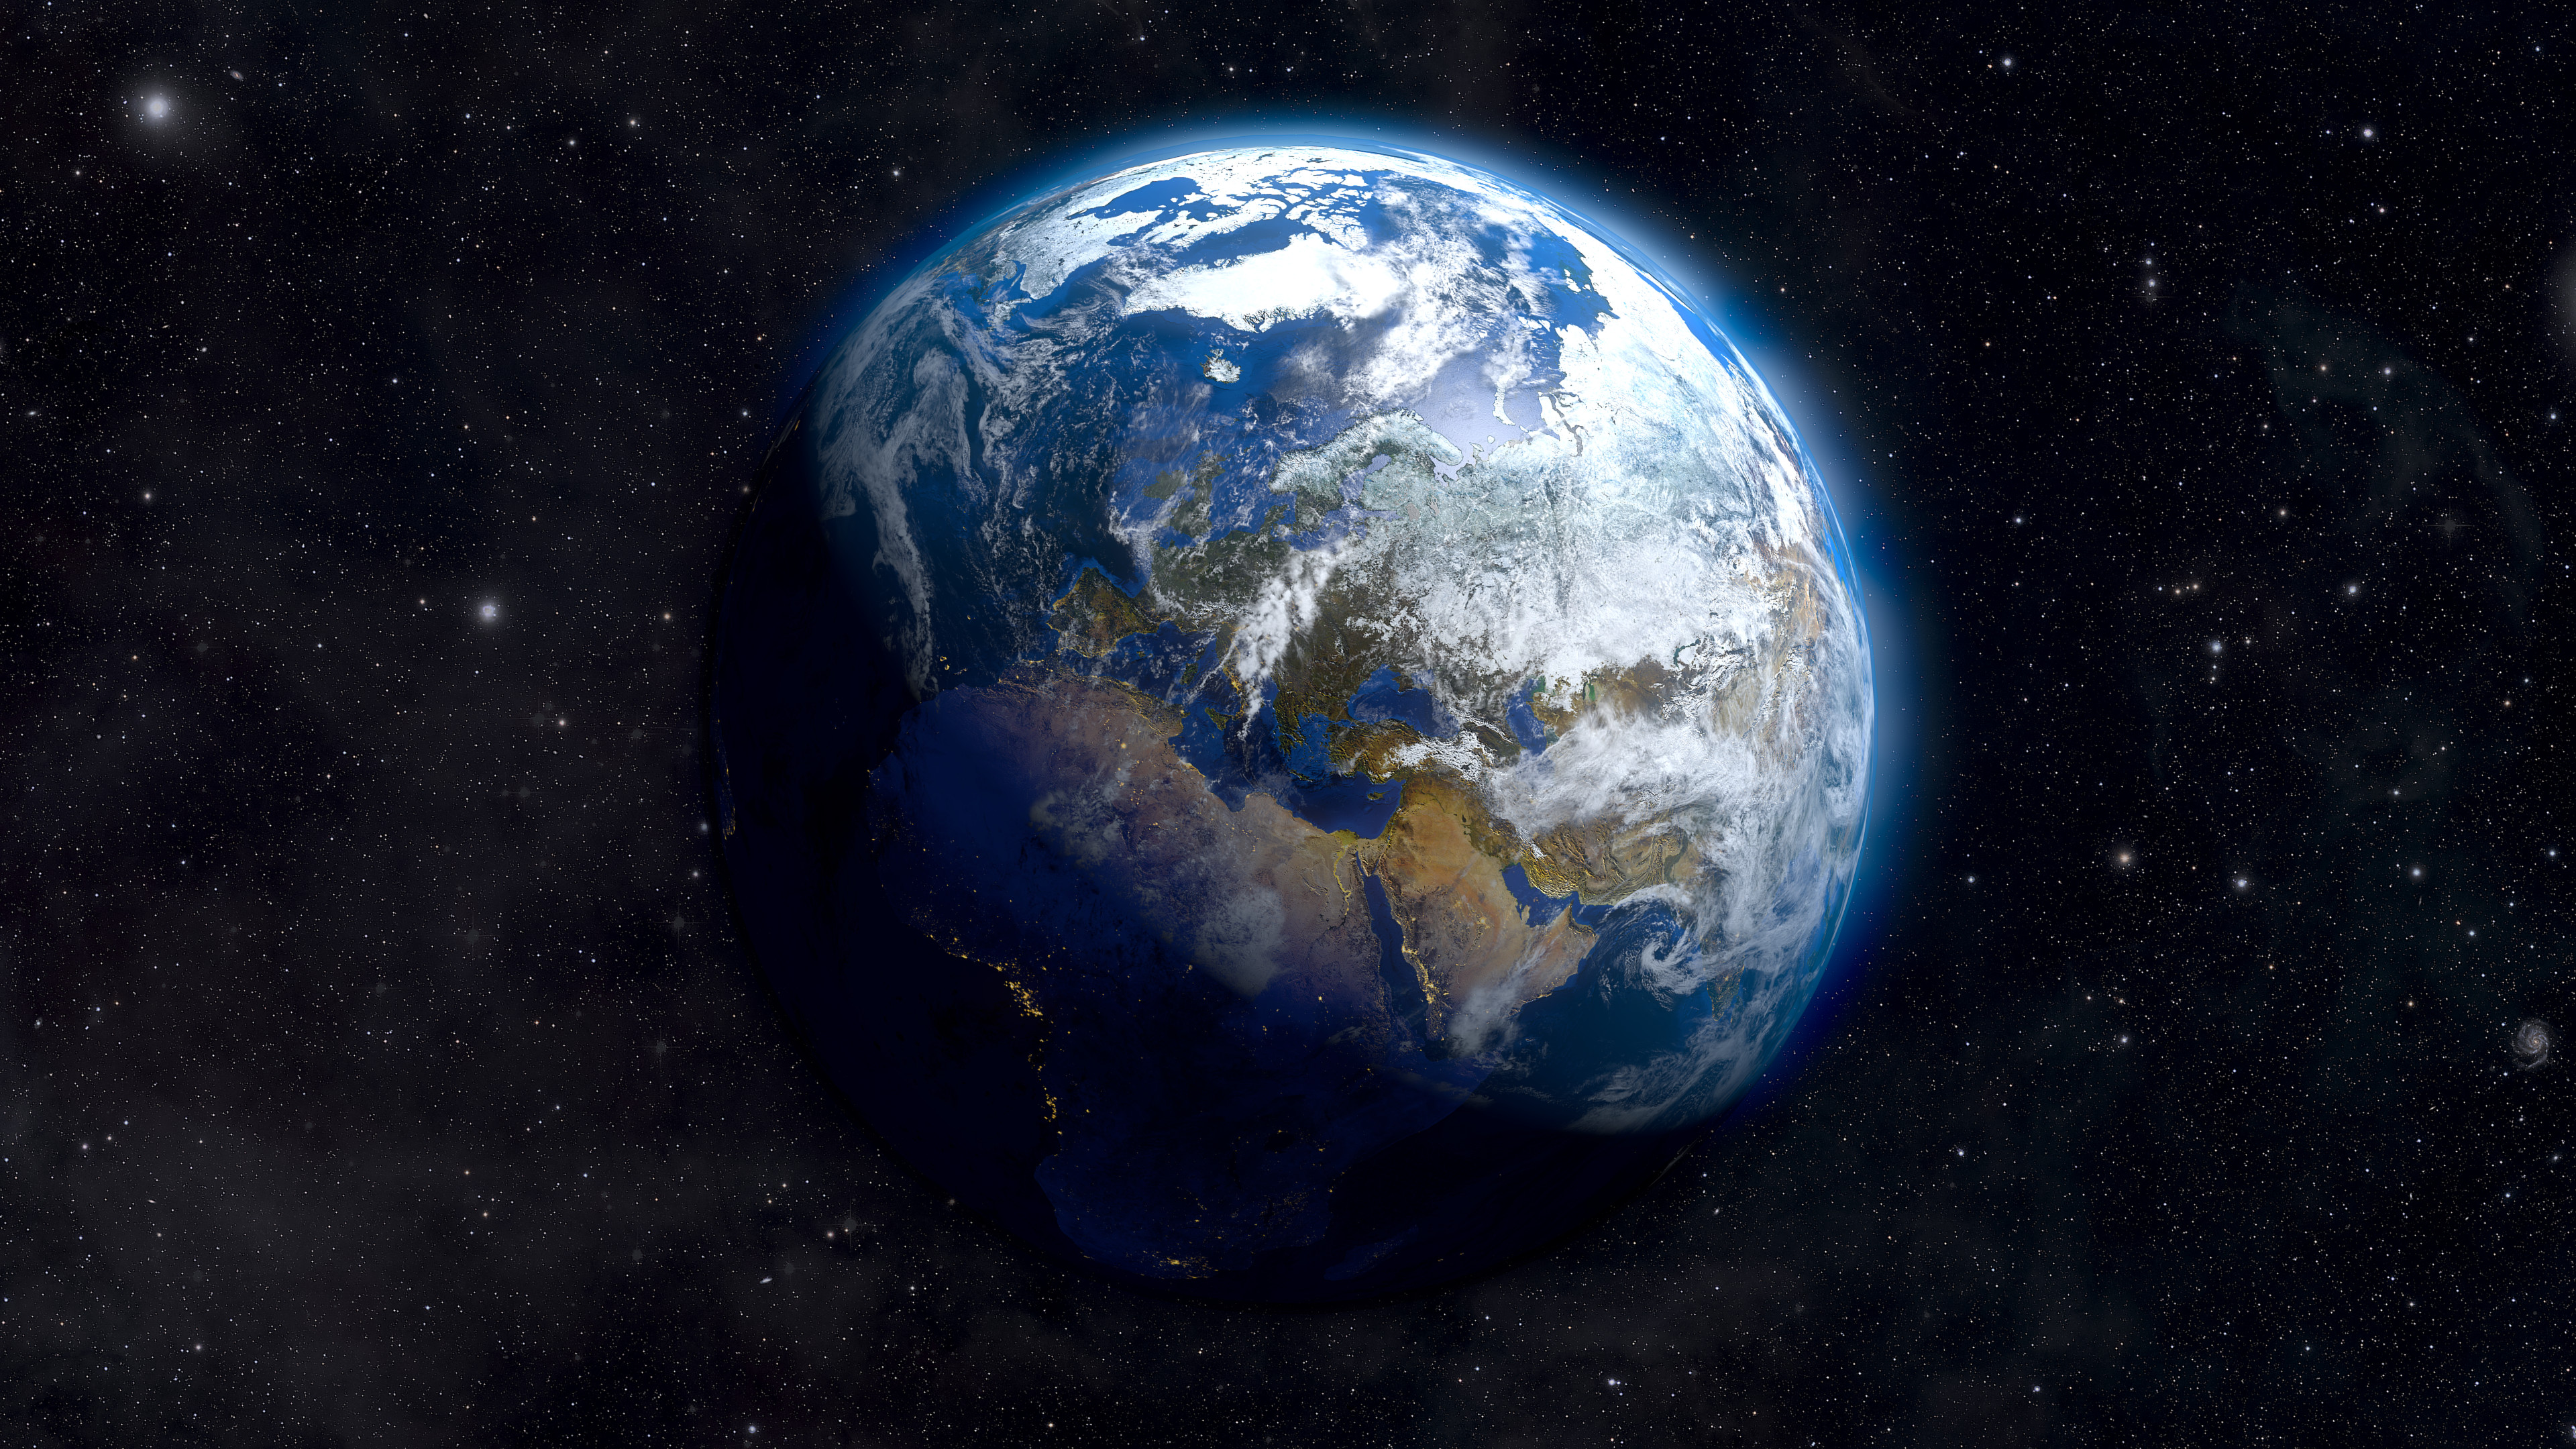 Earth From Space 4K Ultra HD Desktop Wallpaper Uploaded by